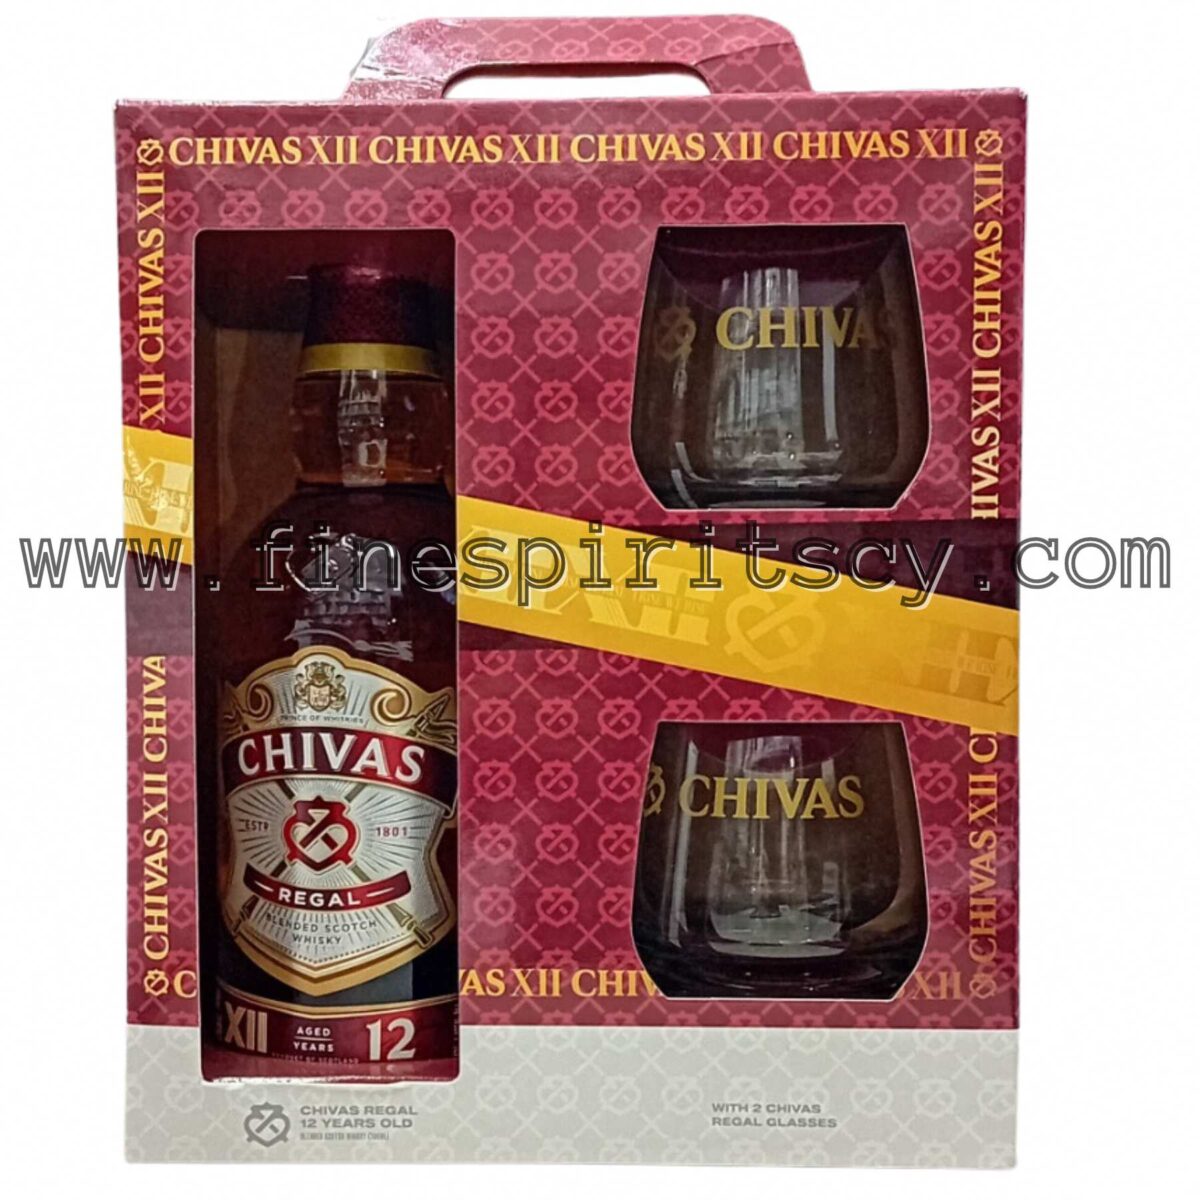 Chivas Regal 12 Years Old Cyprus Gift Set Pack 2 Glasses tumbler fscy 700ml